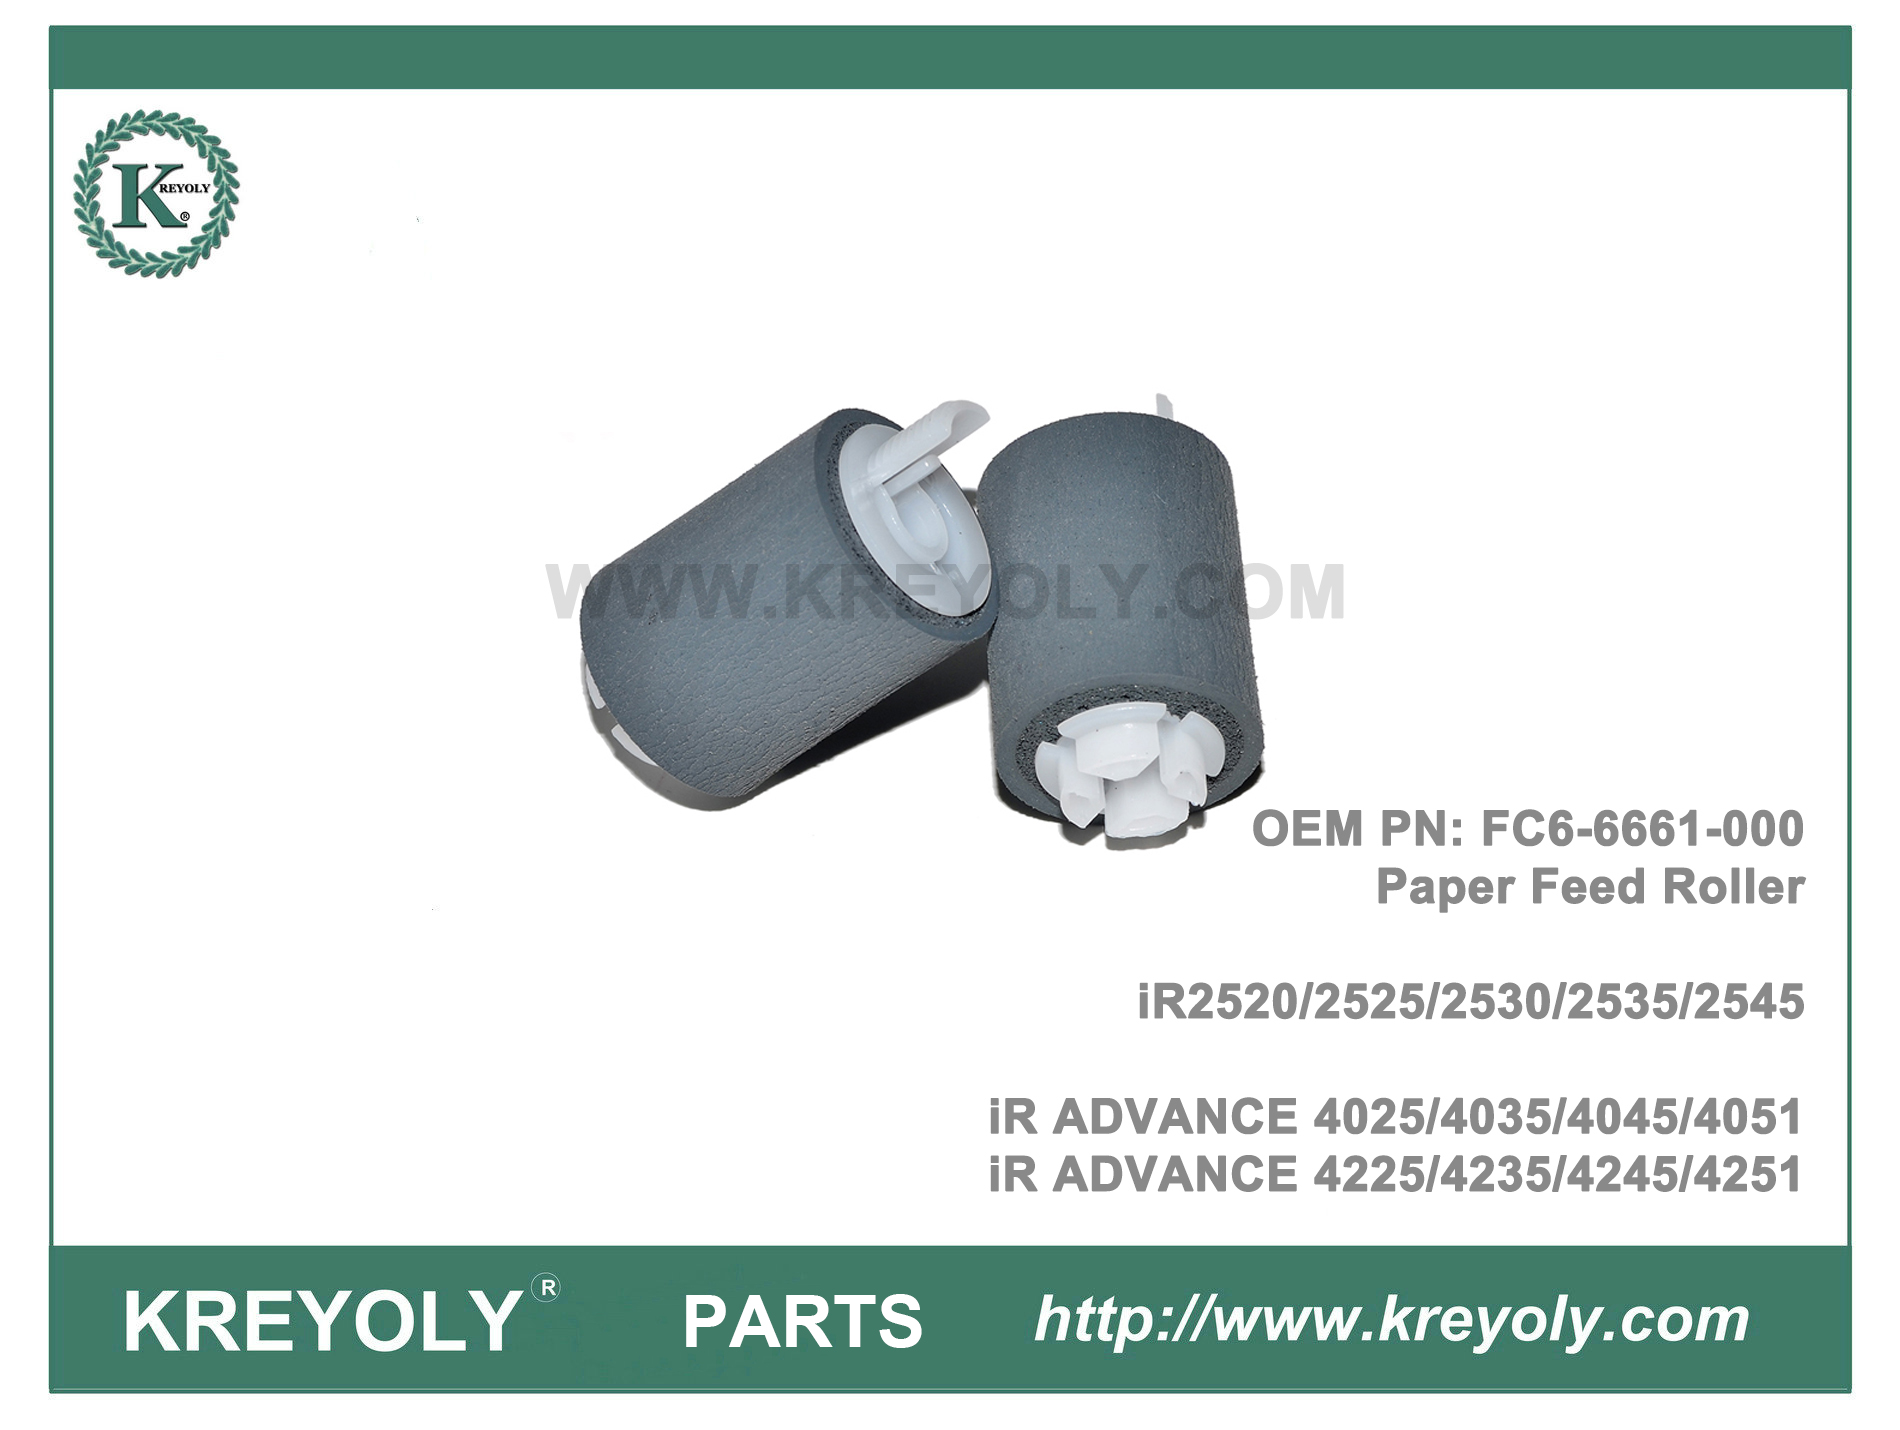 Kit de rodillo de recogida de papel Canon IR4025 FB6-3405-000 FC6-7083-000 FC6-6661-000